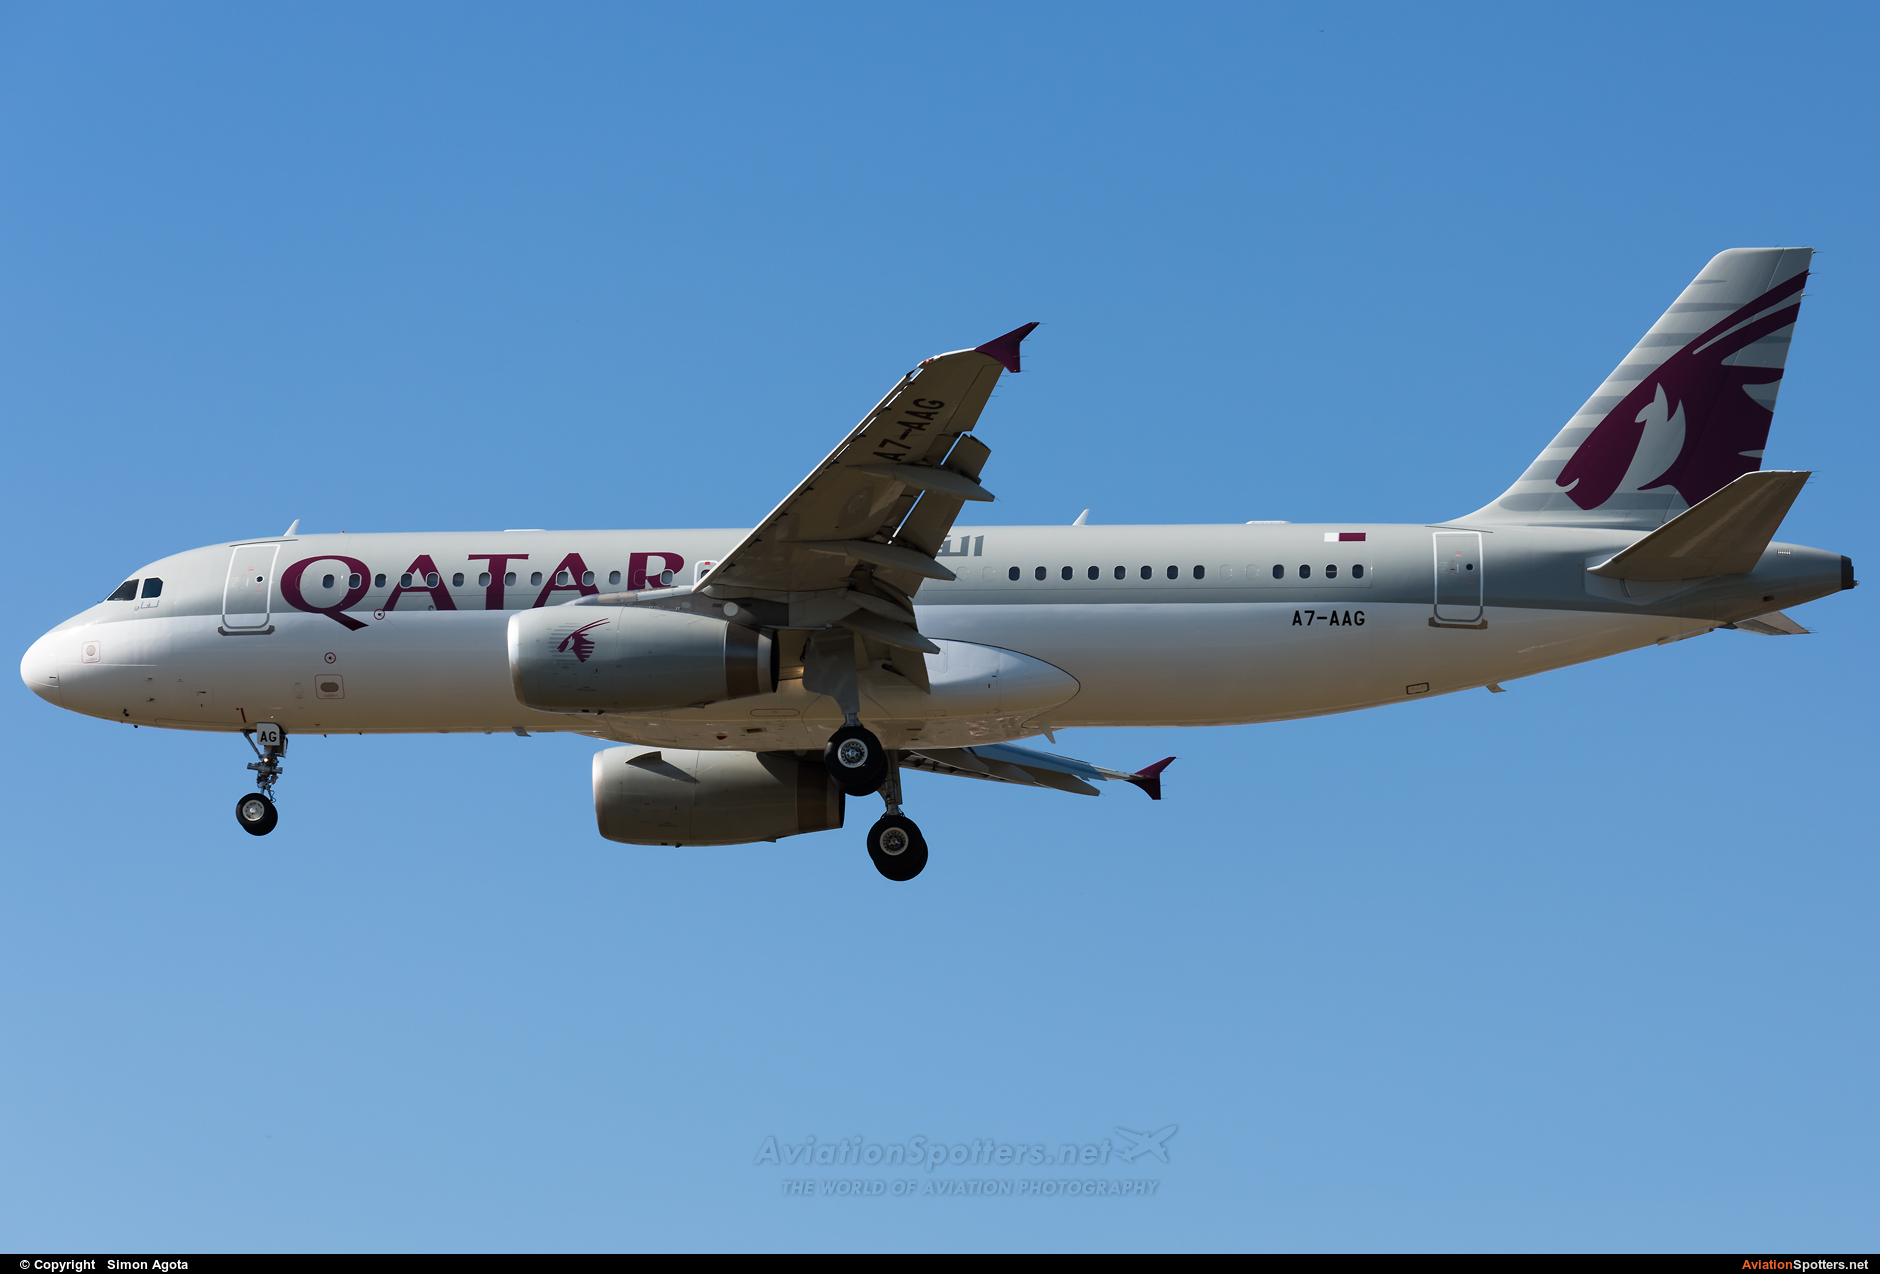 Qatar Amiri Flight  -  A320-232  (A7-AAG) By Simon Agota (goti80)